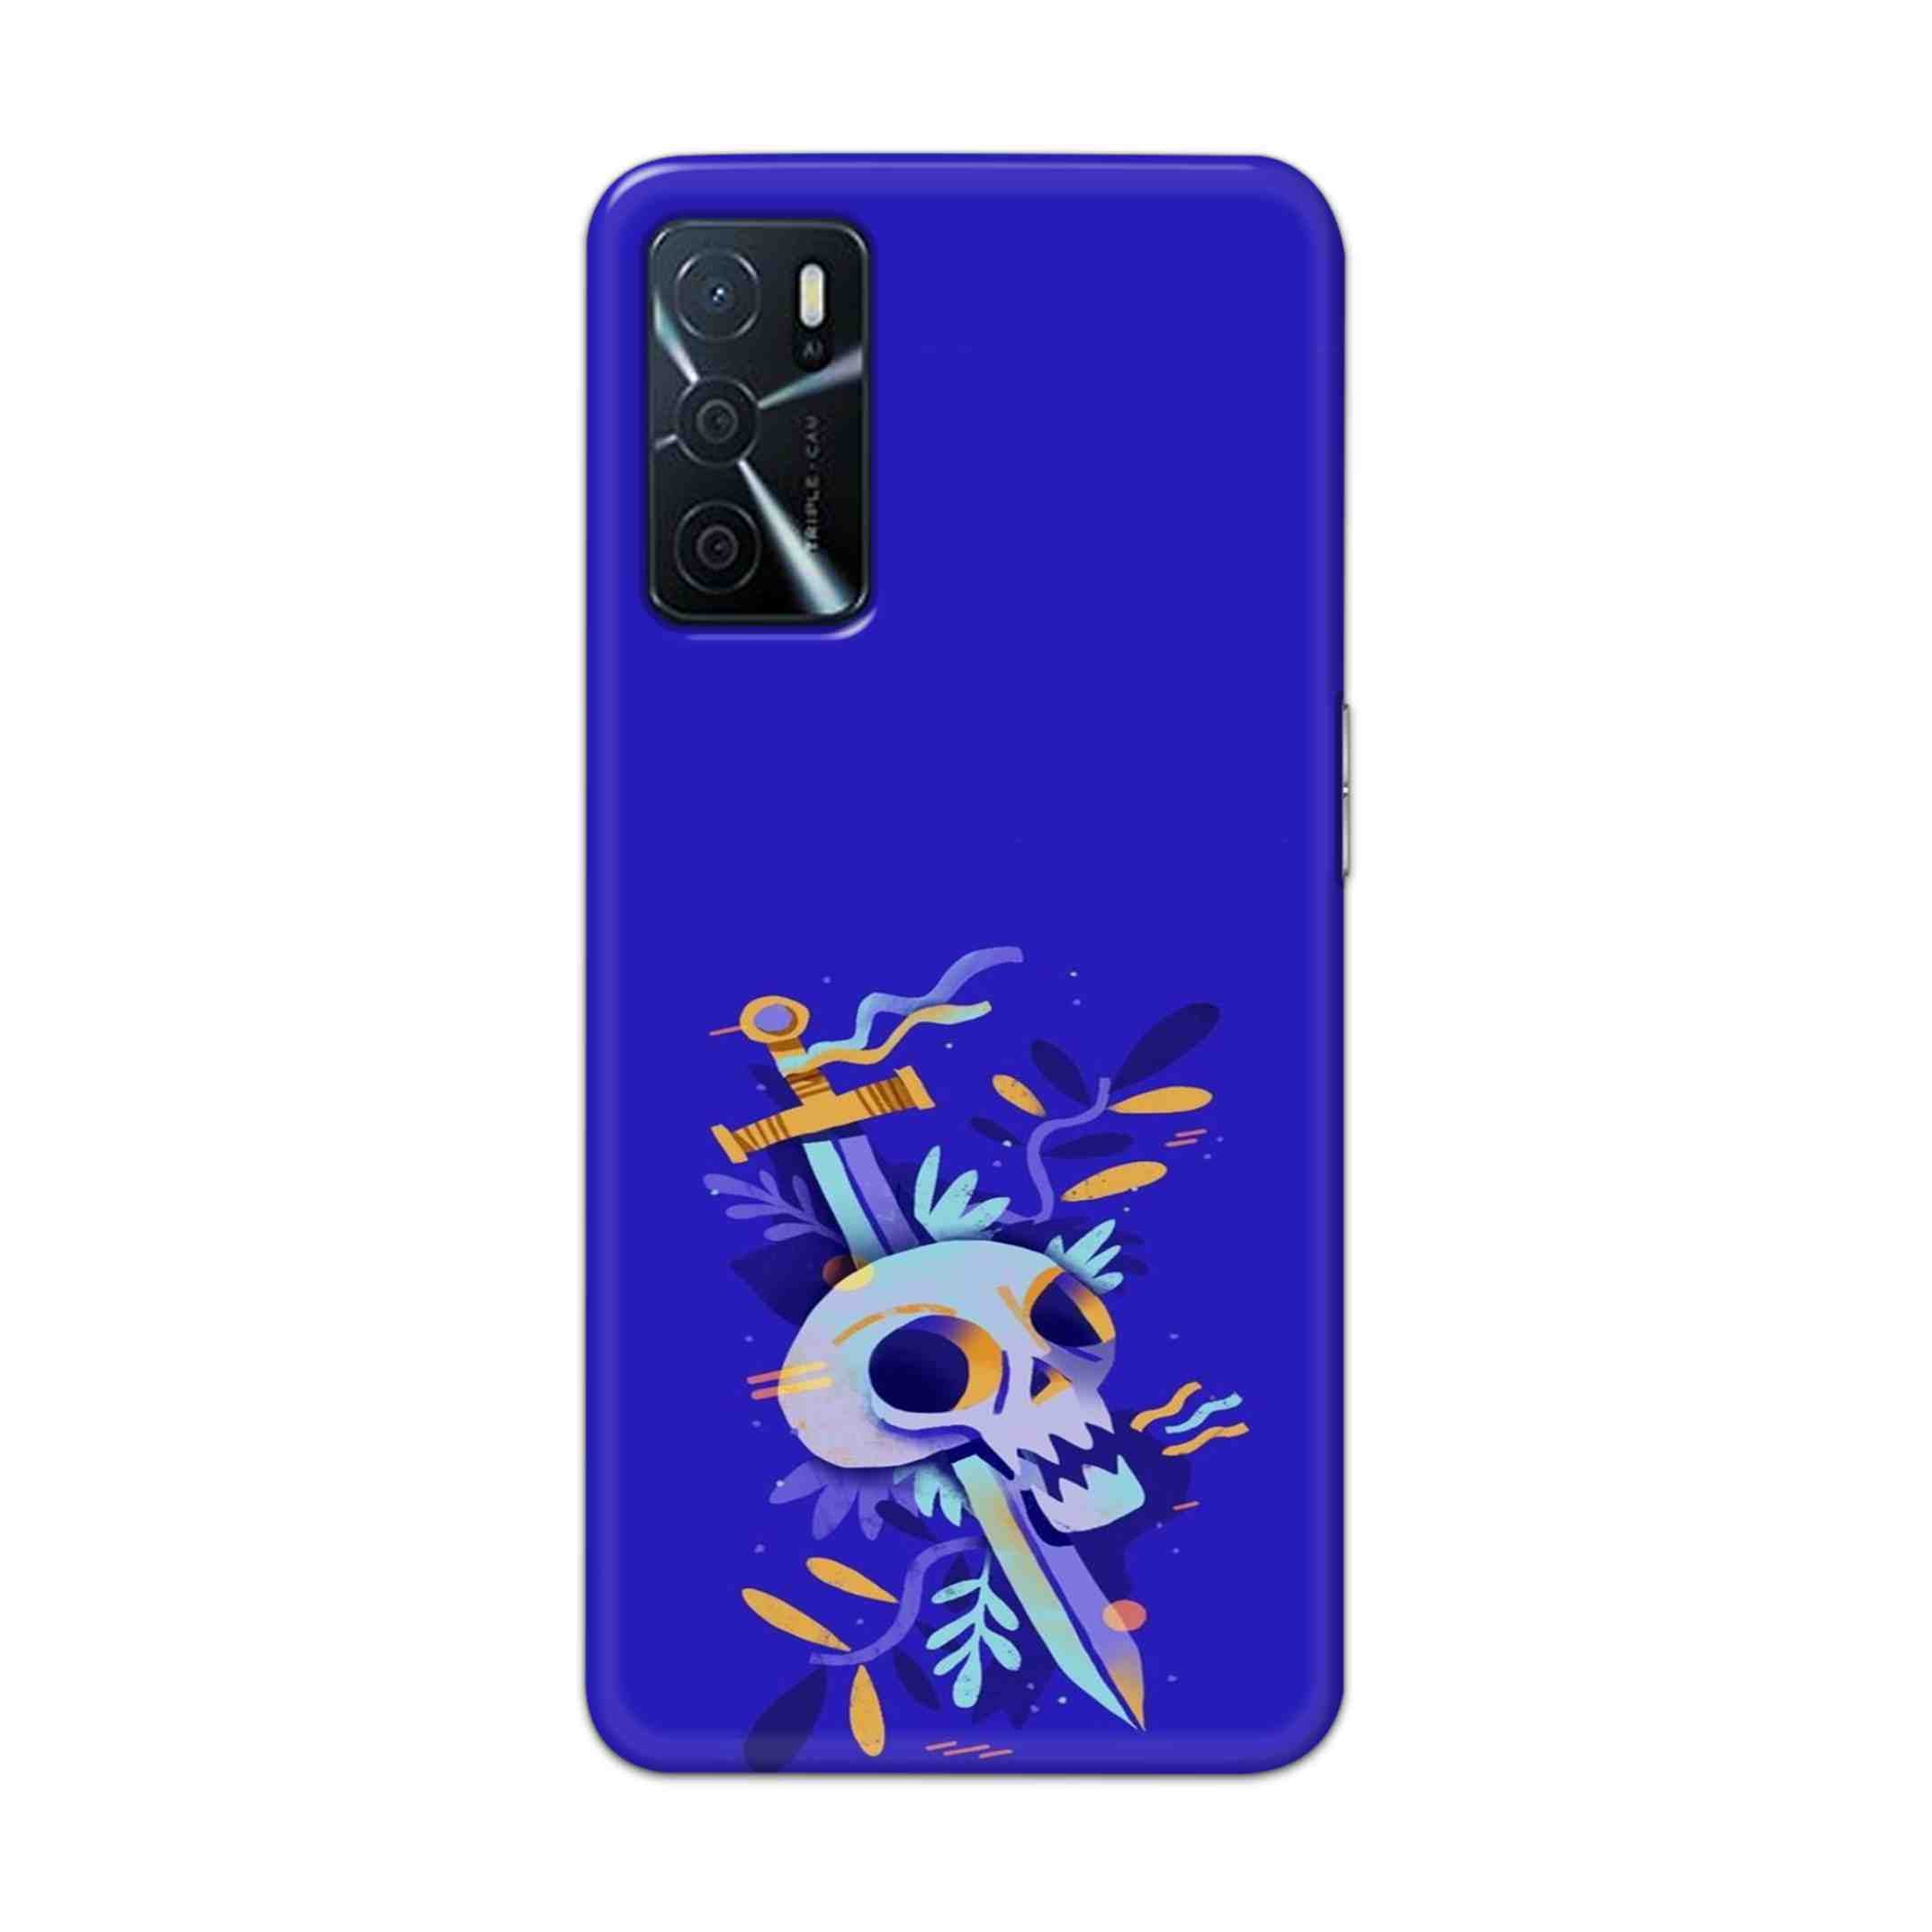 Buy Blue Skull Hard Back Mobile Phone Case Cover For Oppo A16 Online